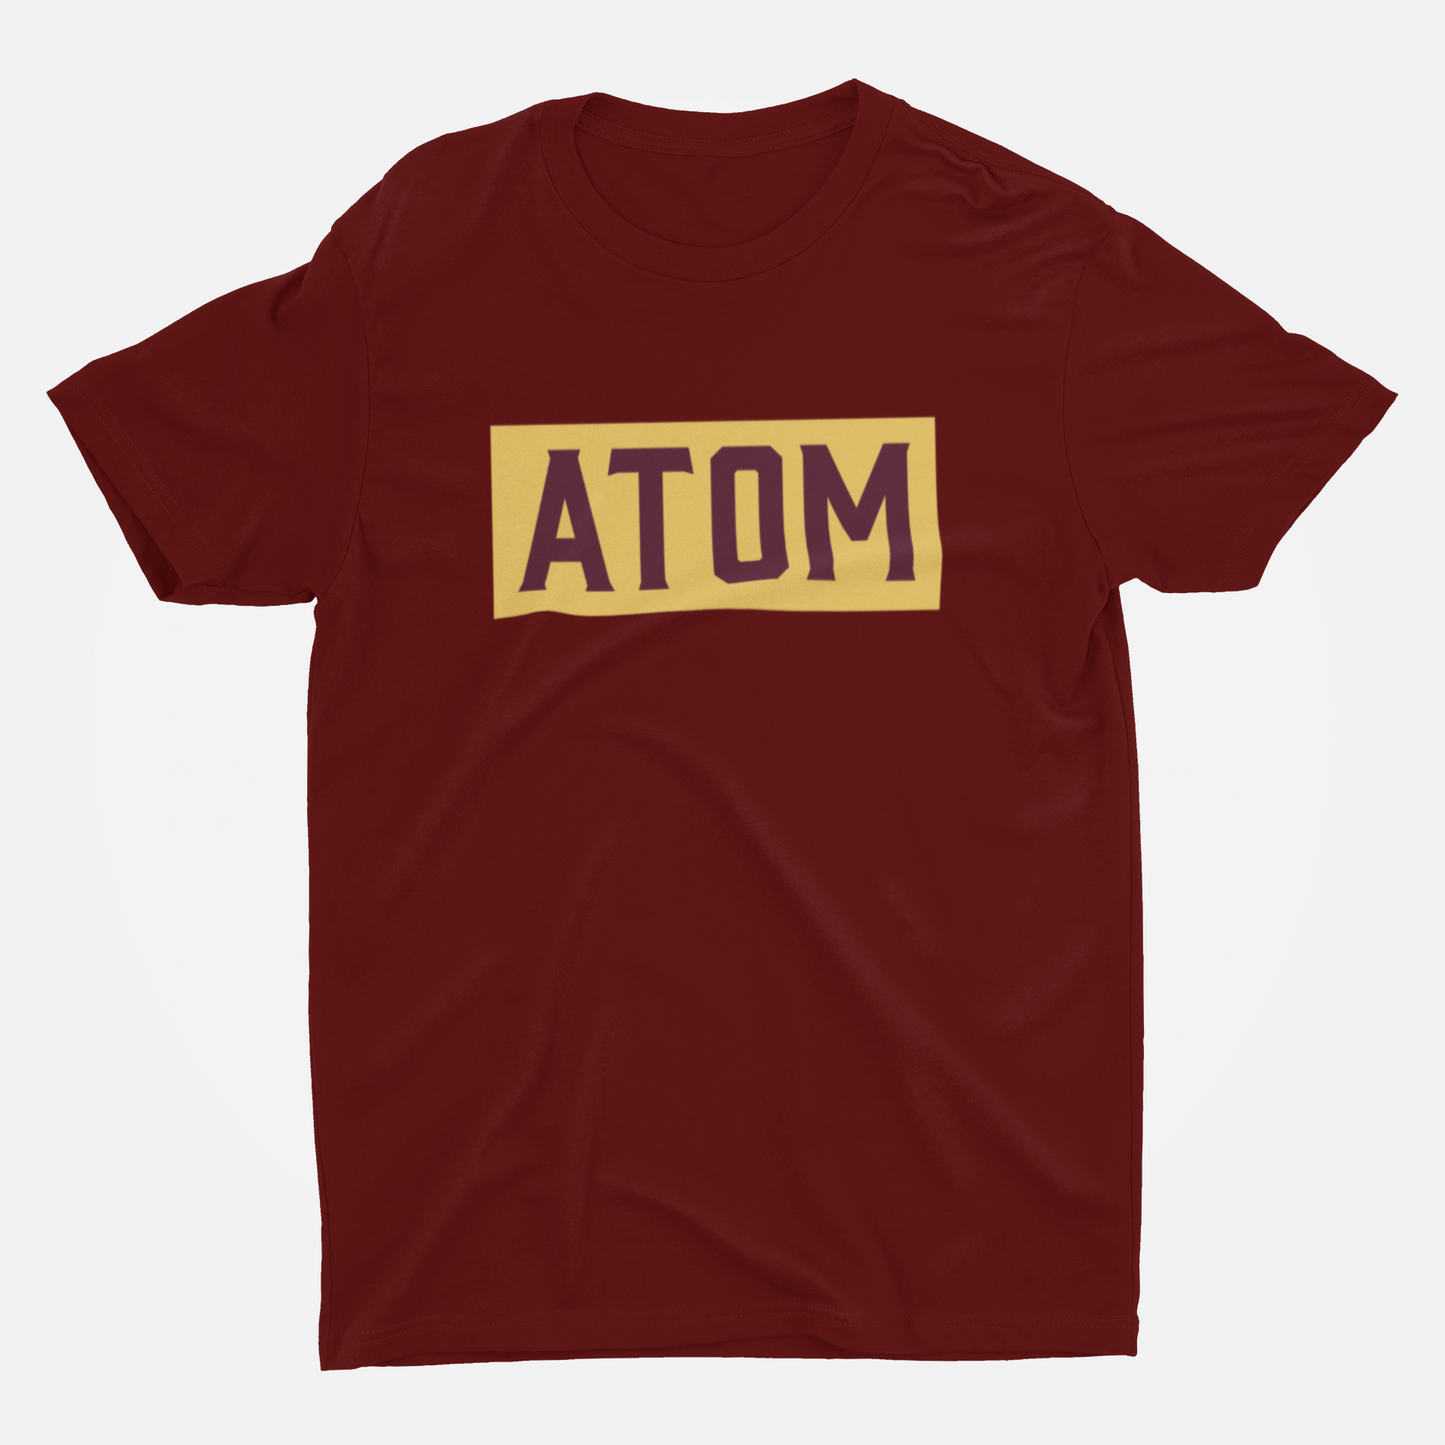 ATOM Signature Marron Round Neck T-Shirt for Men.